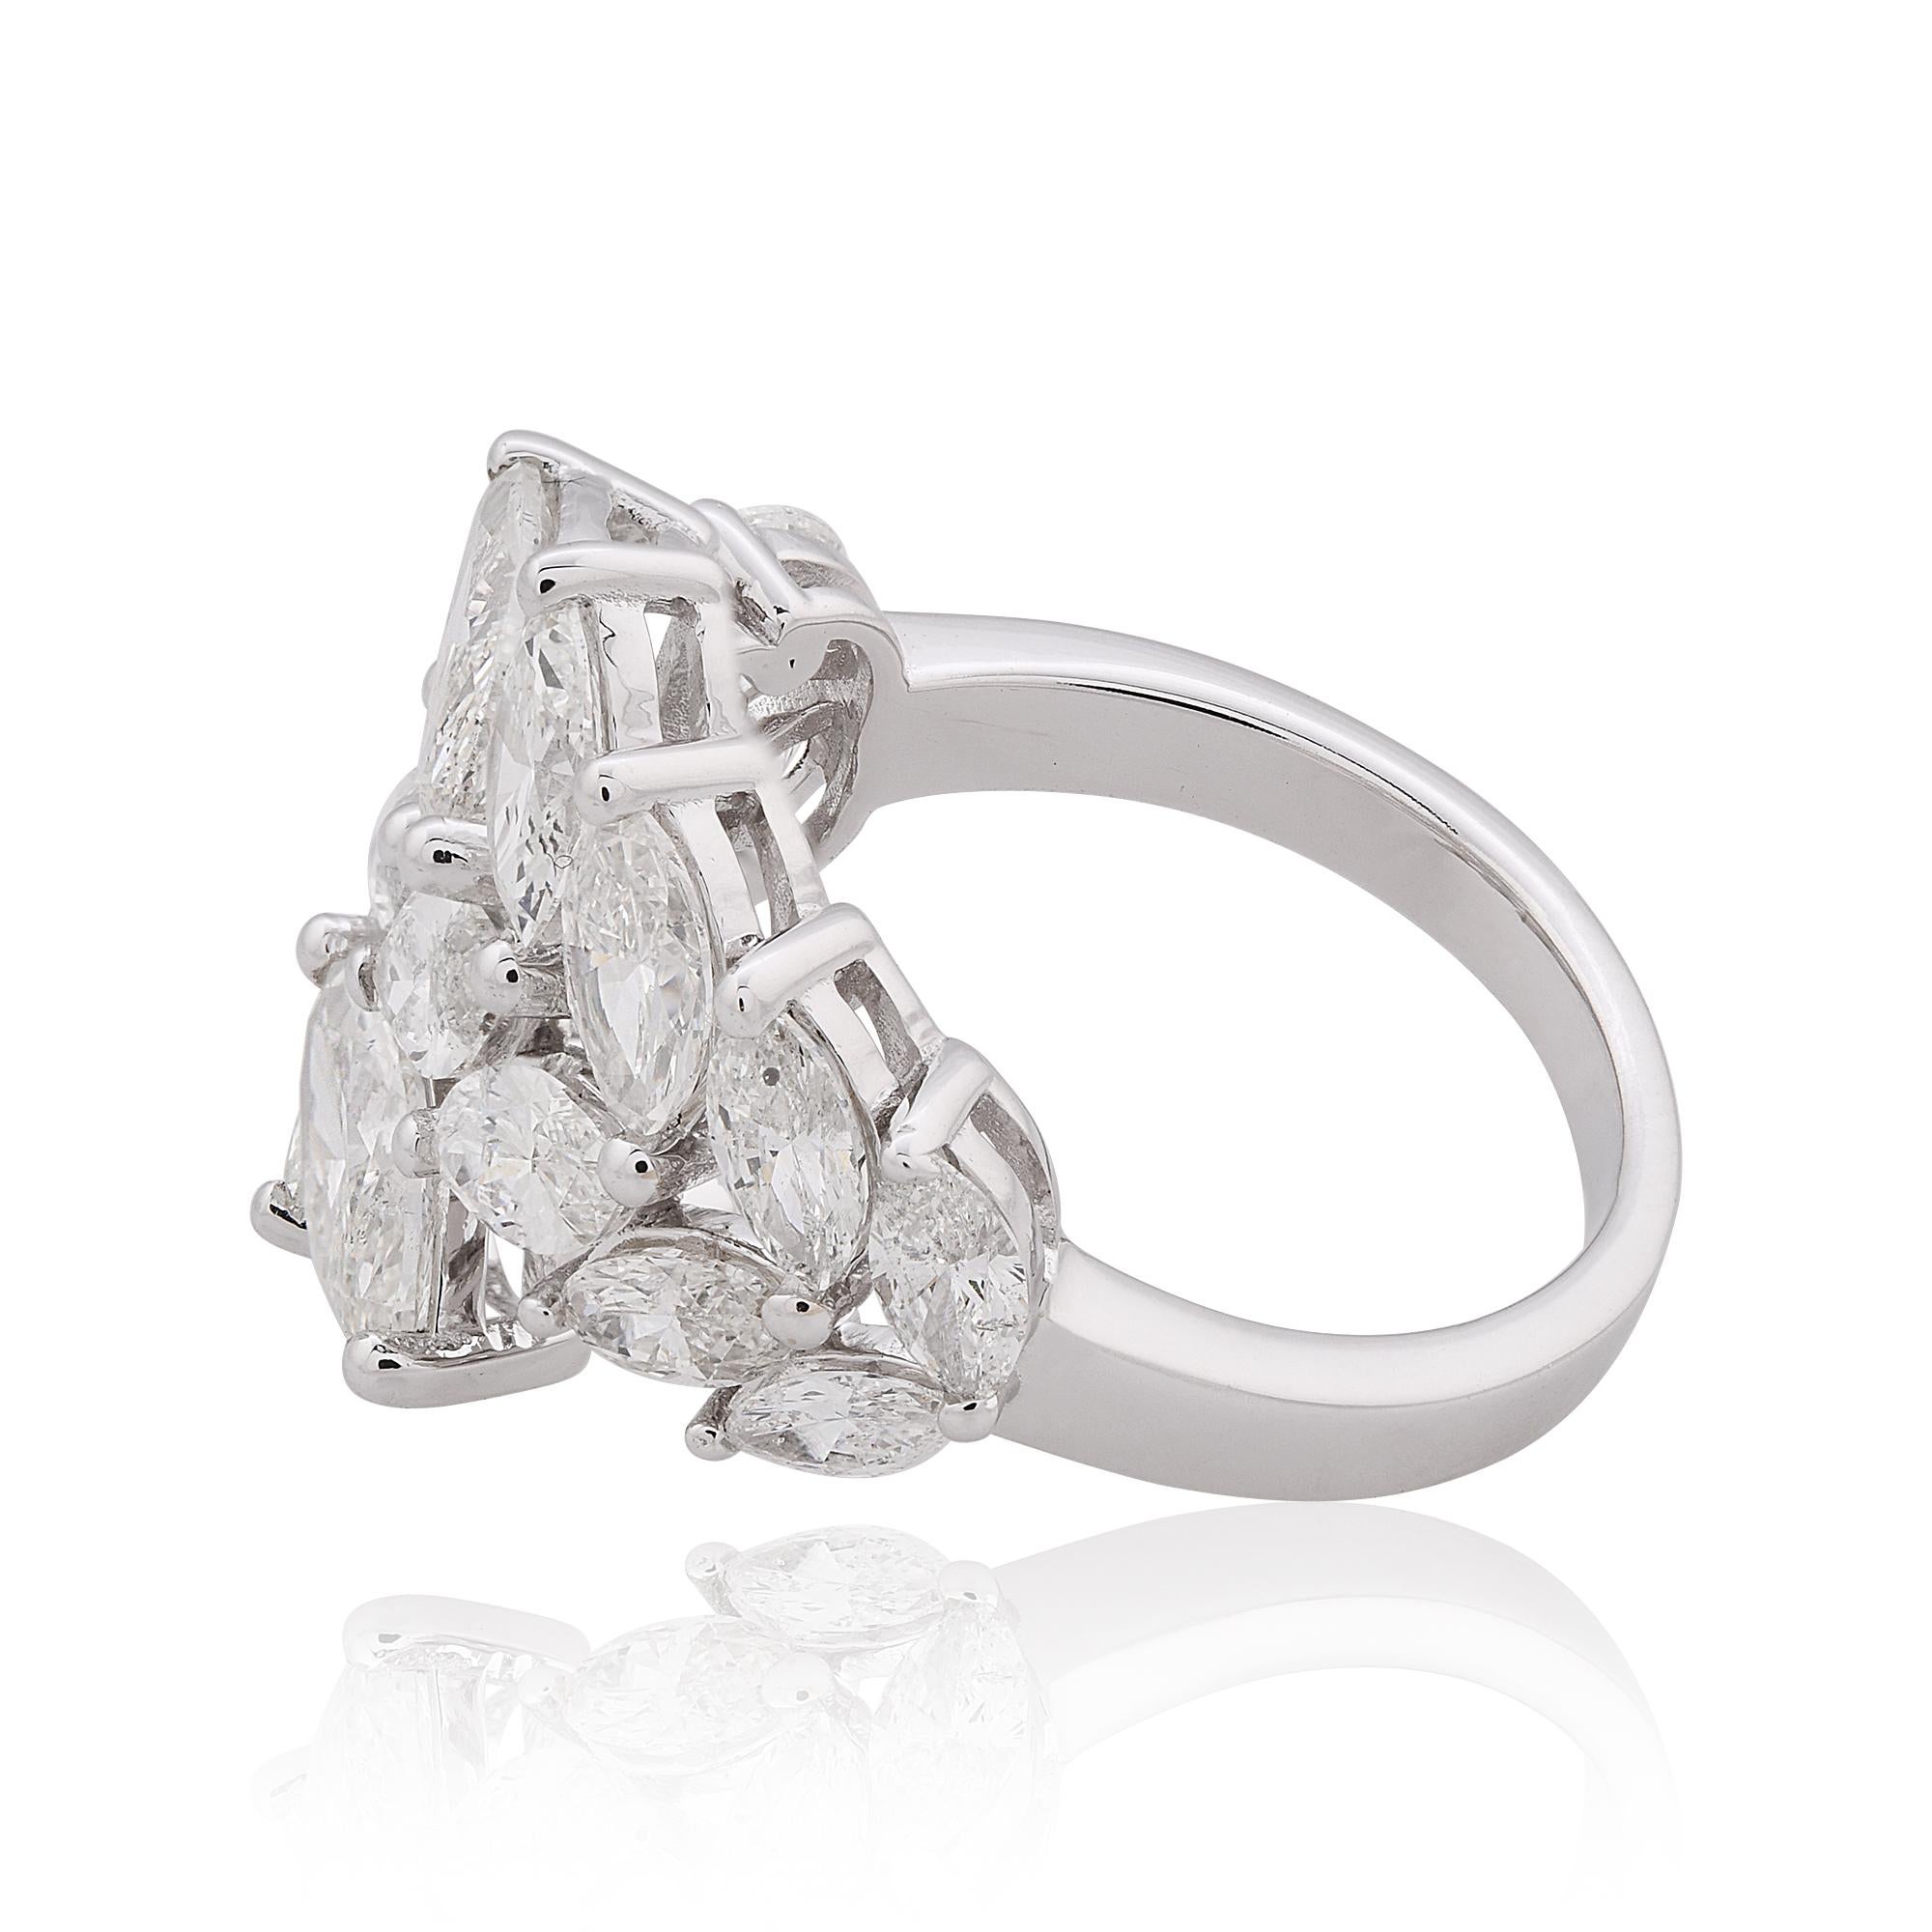 Dieser exquisite 3,25 Karat Marquise Diamond Wrap Ring ist ein Beweis für zeitlose Eleganz und raffinierte Raffinesse. Dieser aus glänzendem 18-karätigem Weißgold gefertigte Ring besticht durch seine atemberaubende Brillanz und seine anmutige